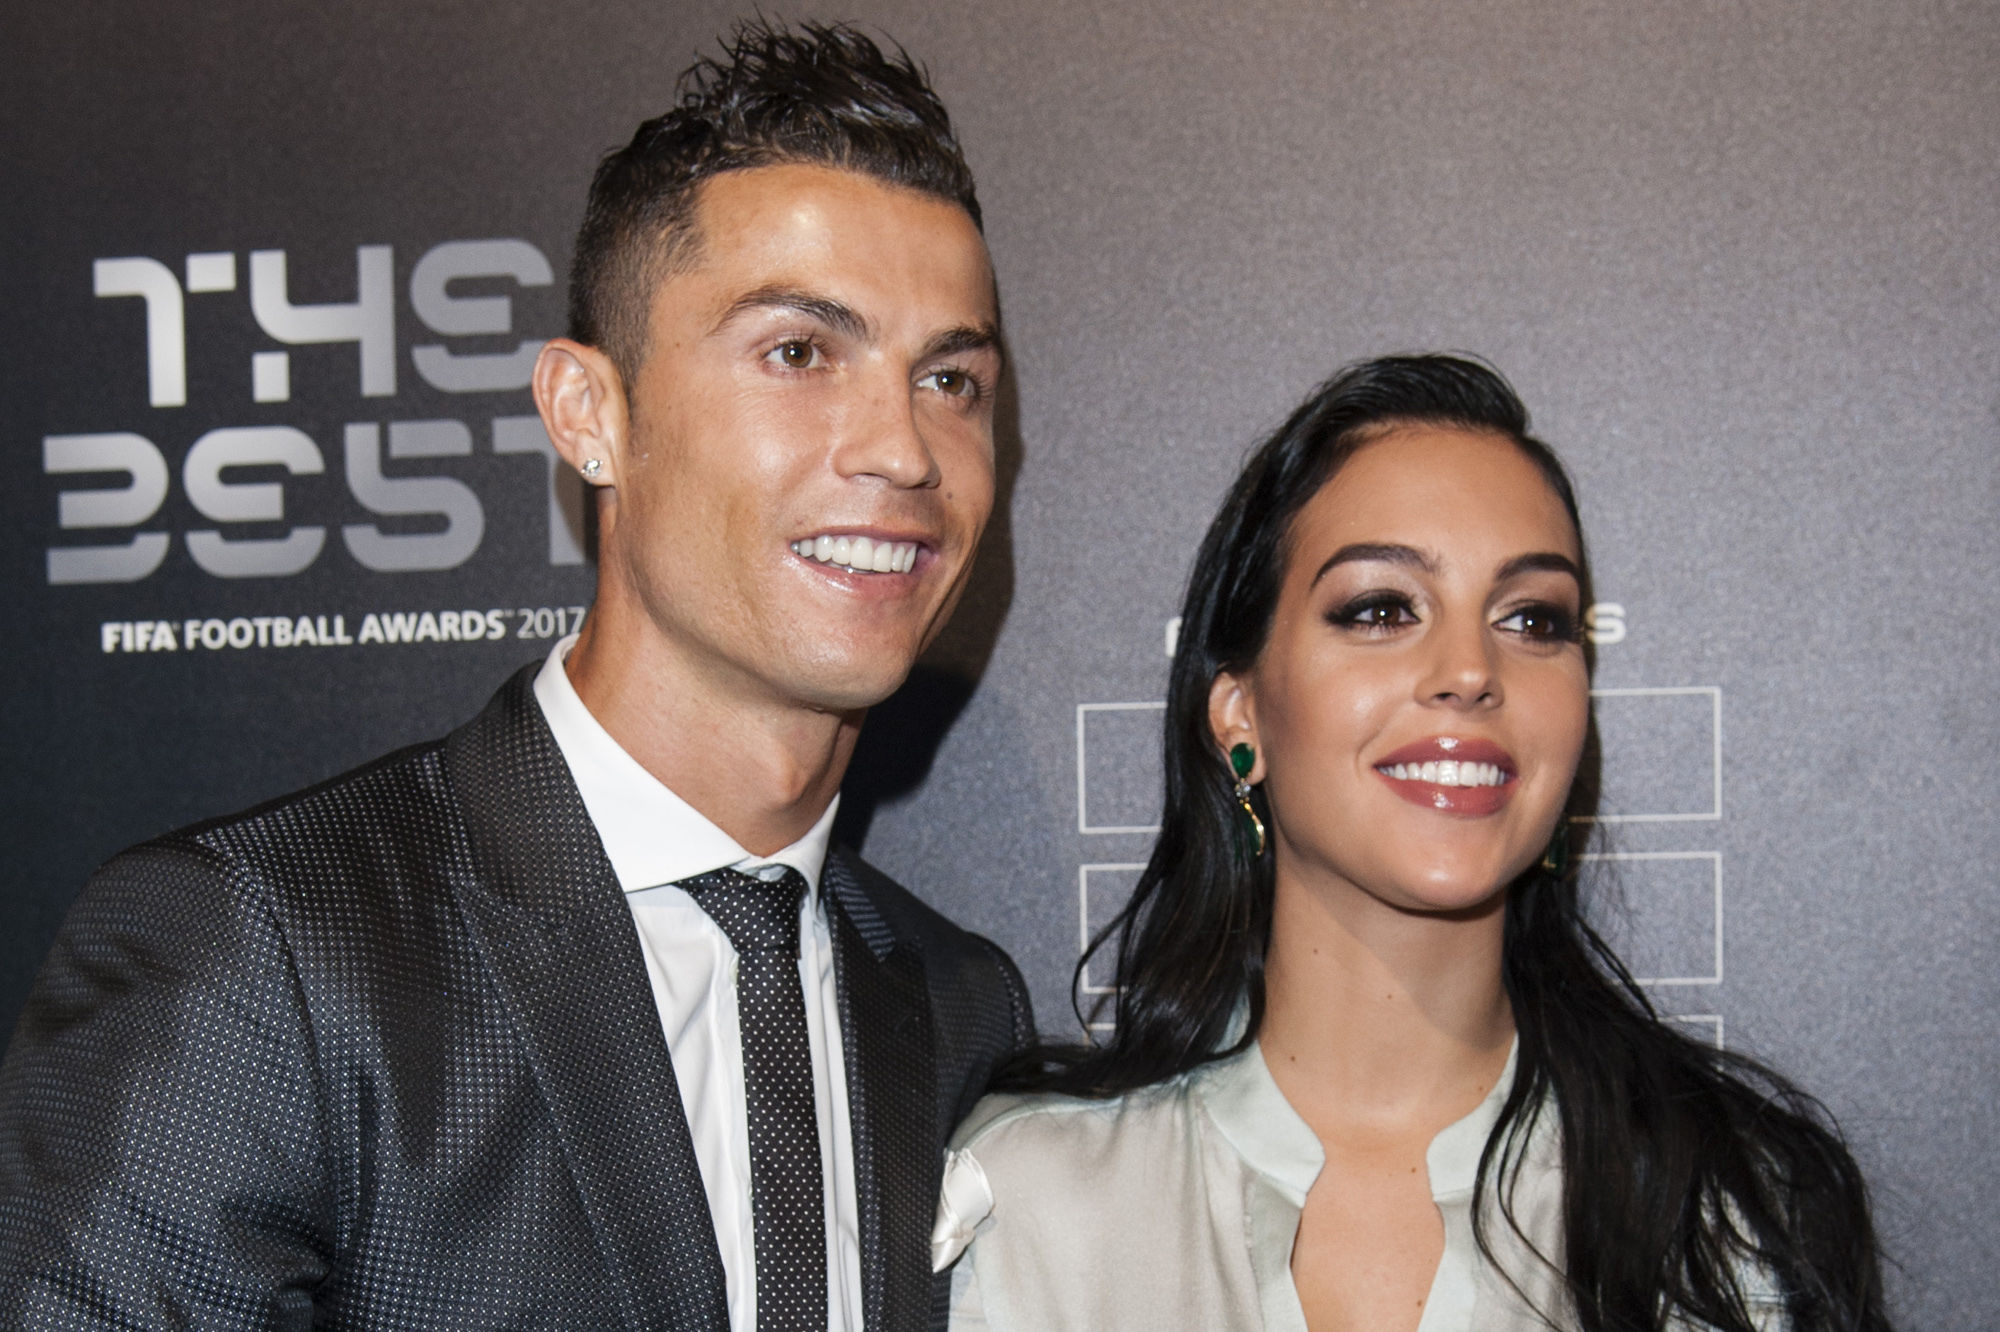 Cristiano Ronaldo et Georgina Rodriguez en vacances : Les amoureux savourent leurs retrouvailles